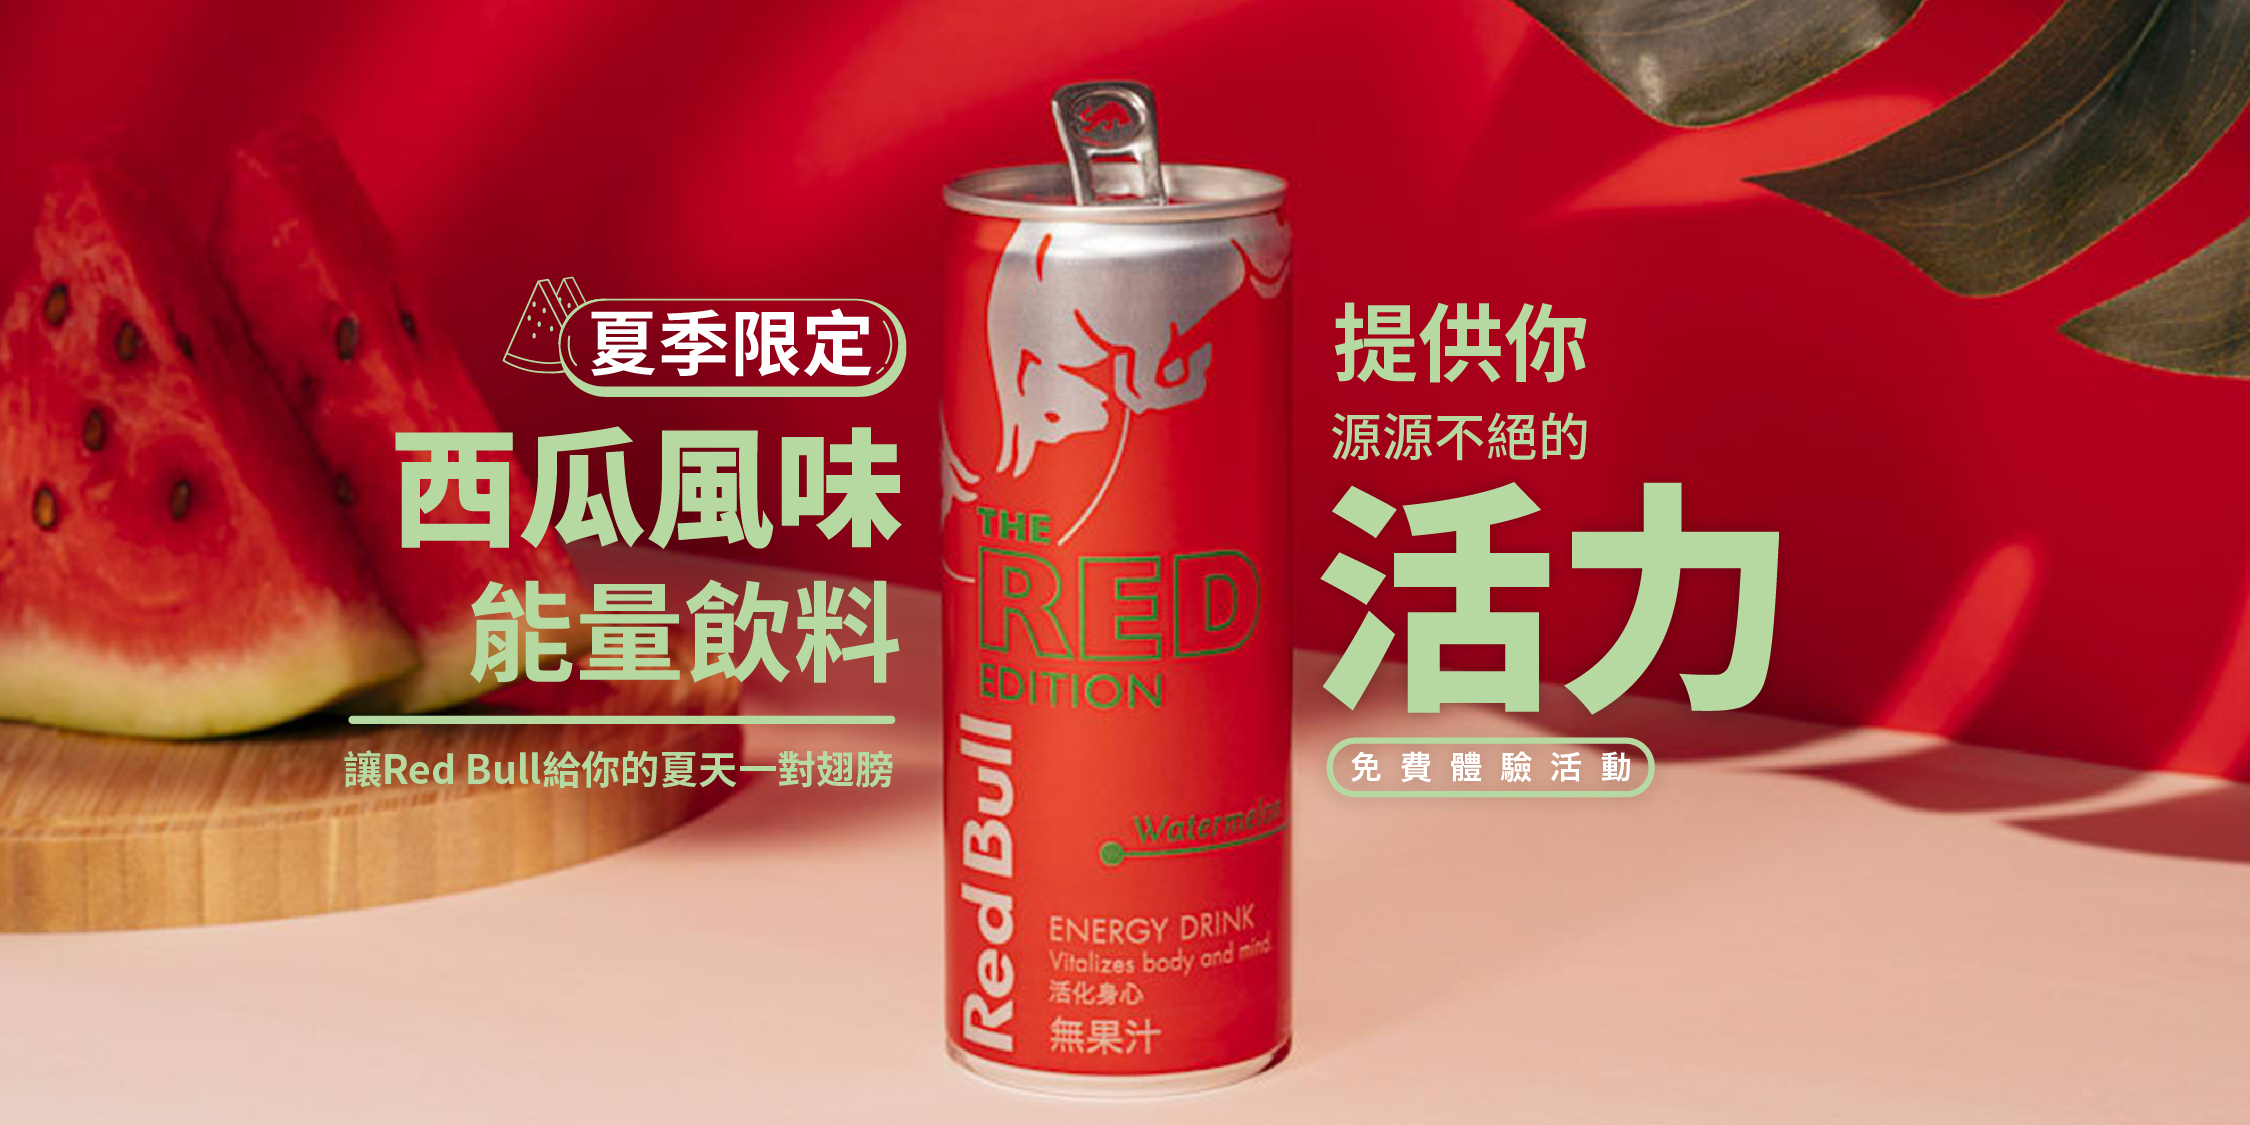 Red Bull 紅牛西瓜風味能量飲料給你的夏天一對翅膀 食力foodnext 食事求實的知識頻道